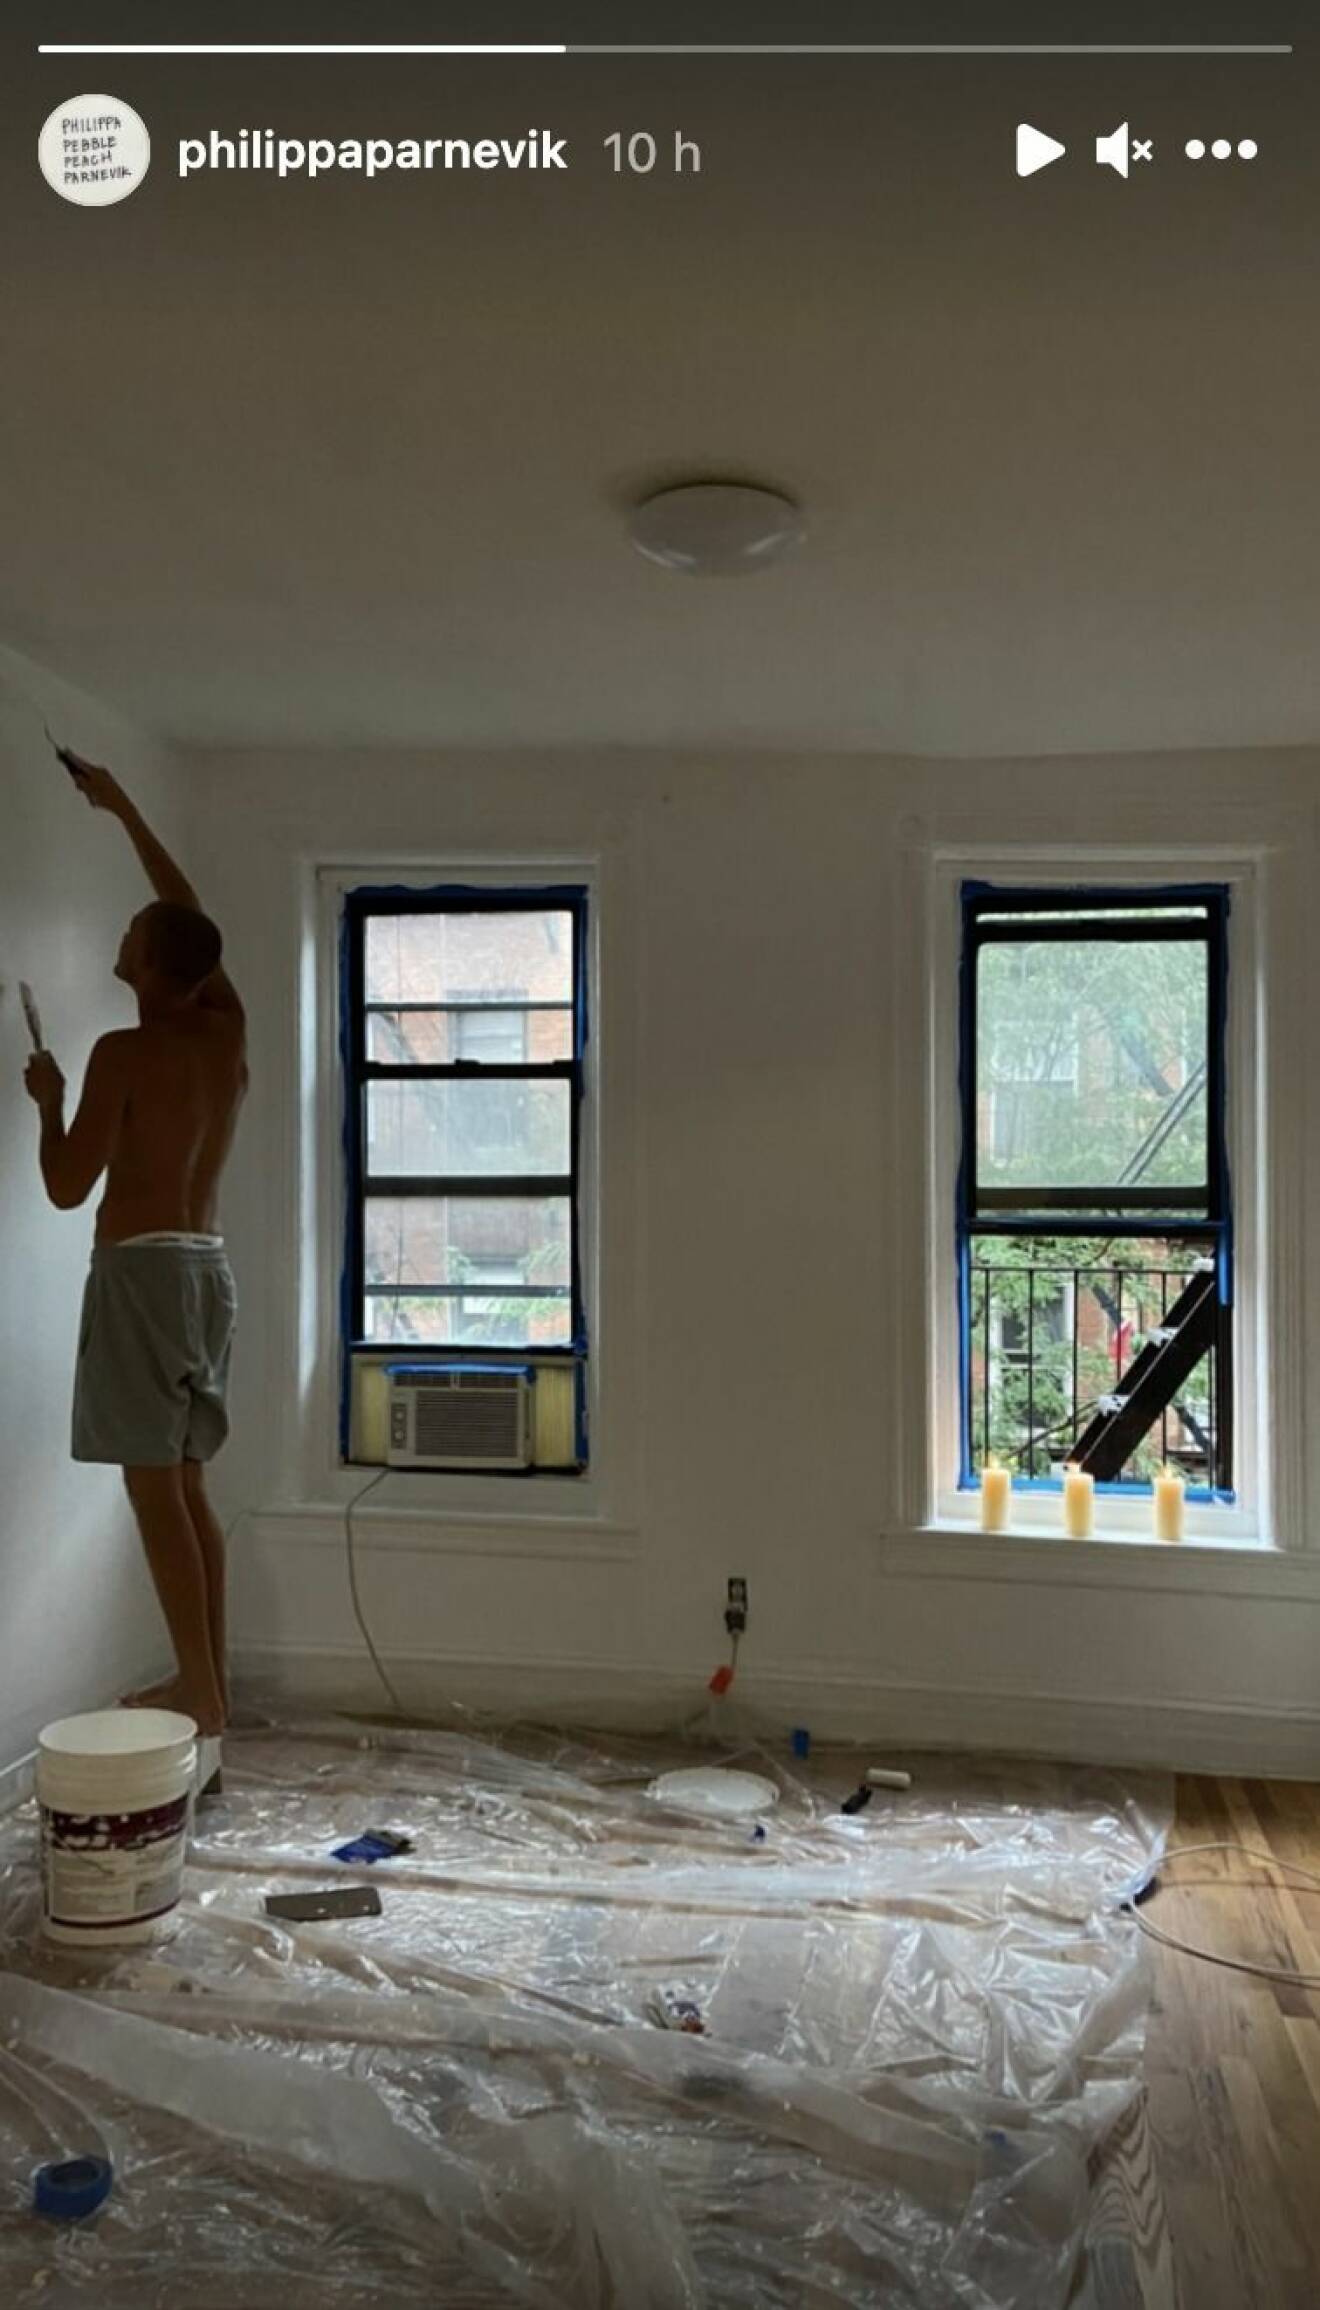 Philippa Parnevik visar upp sin nya lägenhet i New York på Mulberry street.